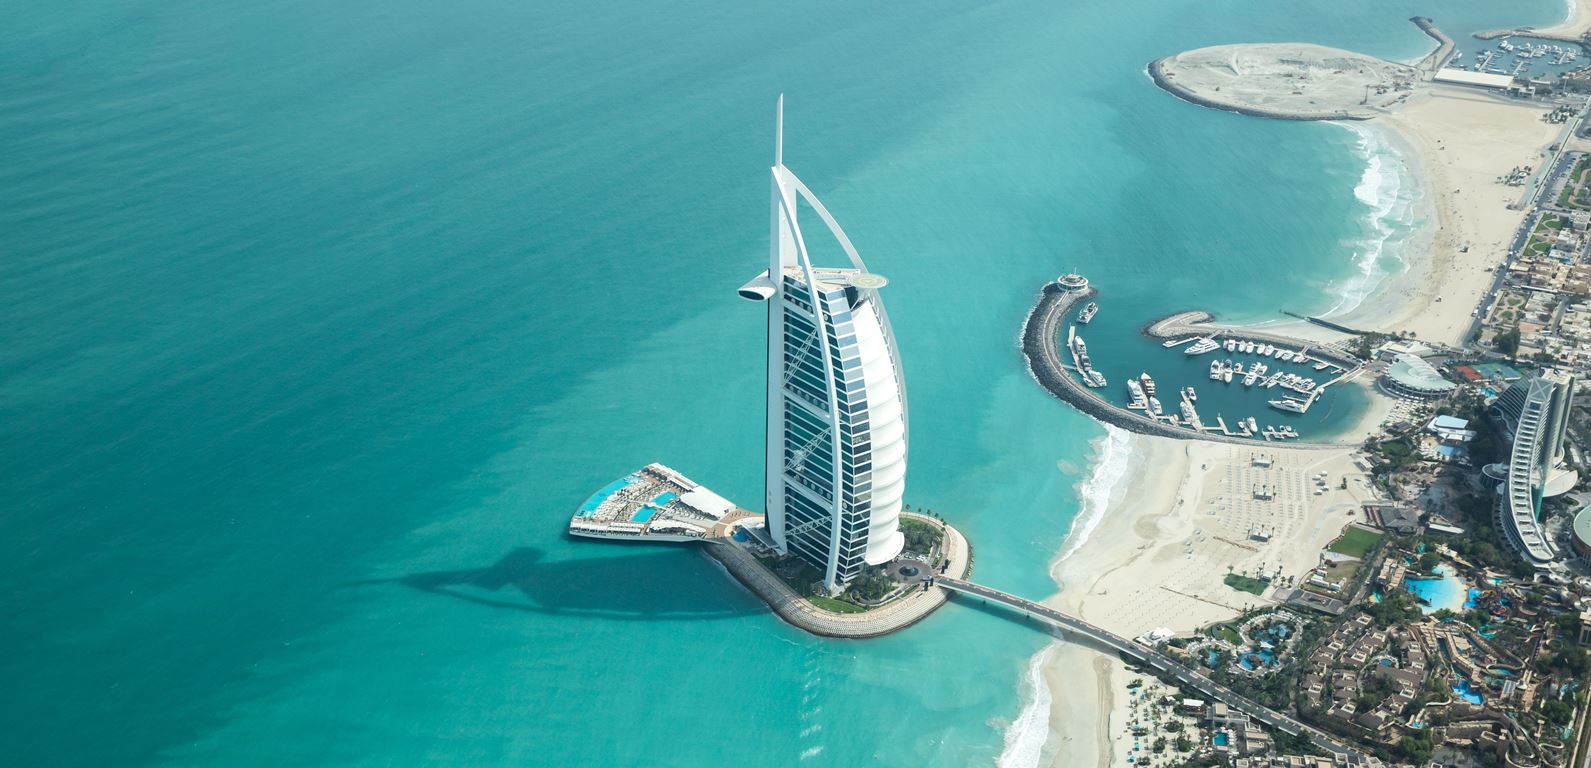 Kétórás szoptatási szabadság, helyüket kereső gazdagok - Milyen az élet Dubajban?